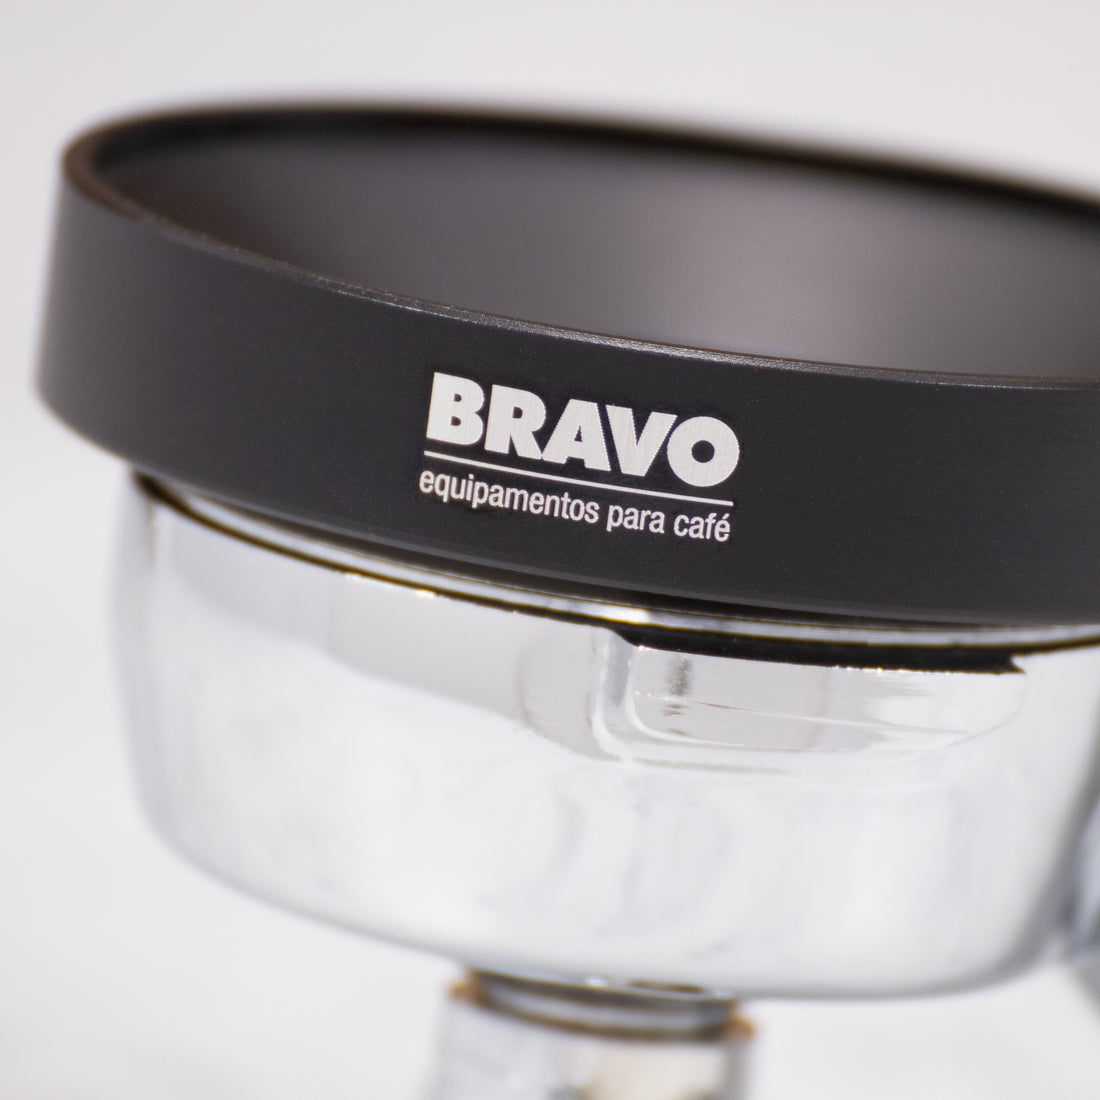 Bravo 58 mm Dosing Funnel - Black